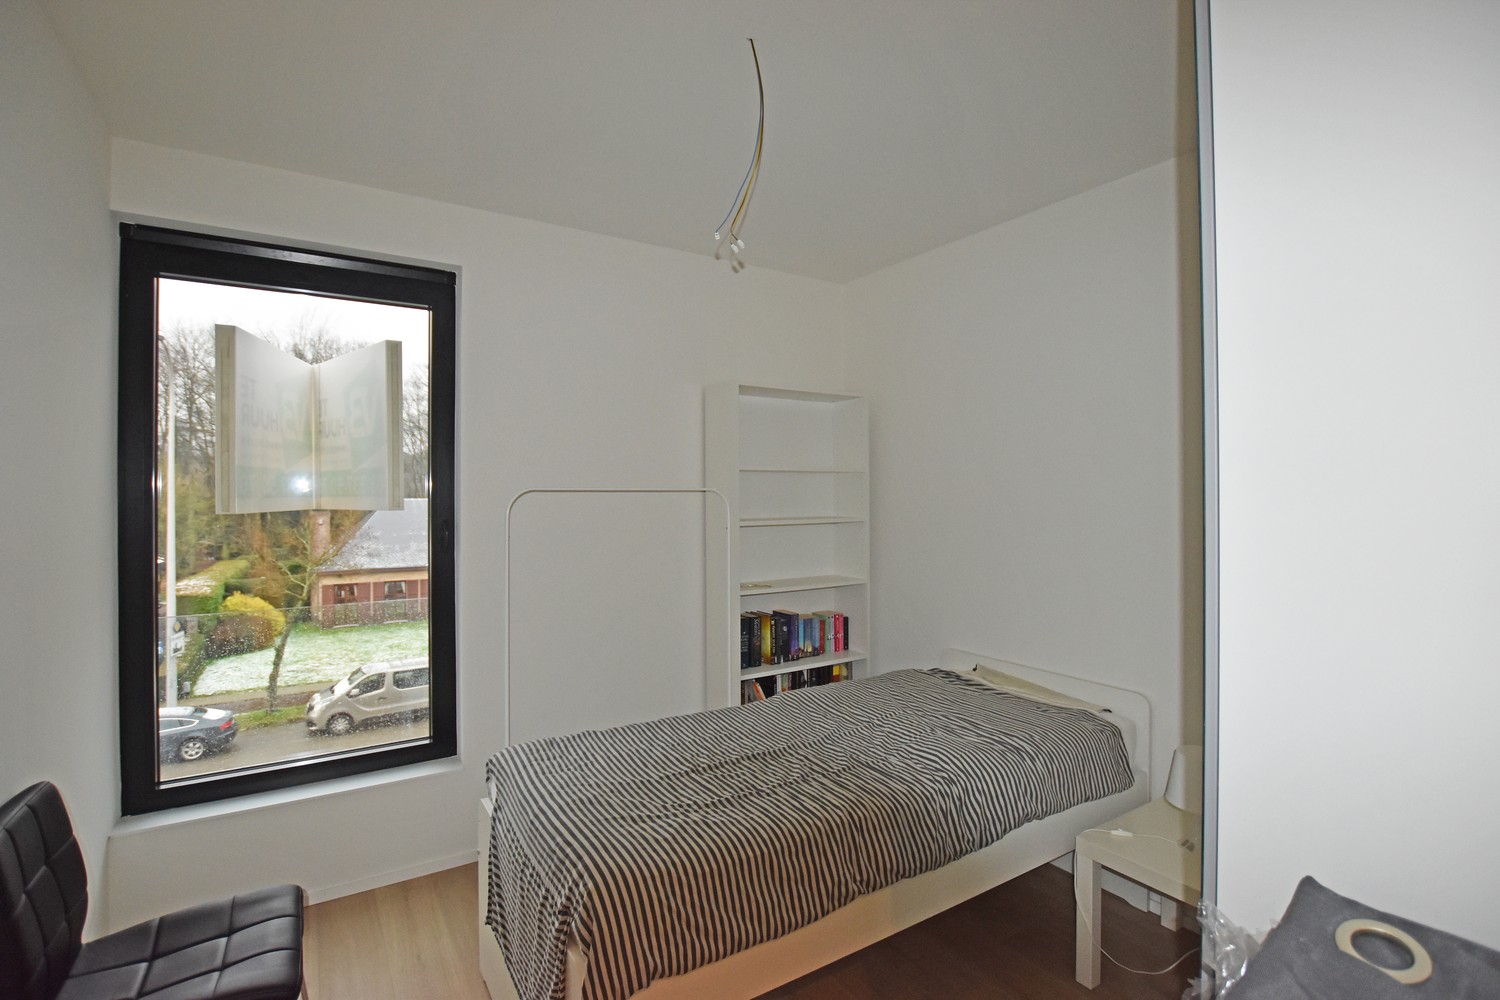 Stijlvol afgewerkt appartement met 2 slaapkamers, terras & autostaanplaats/garagebox in Wijnegem! afbeelding 8